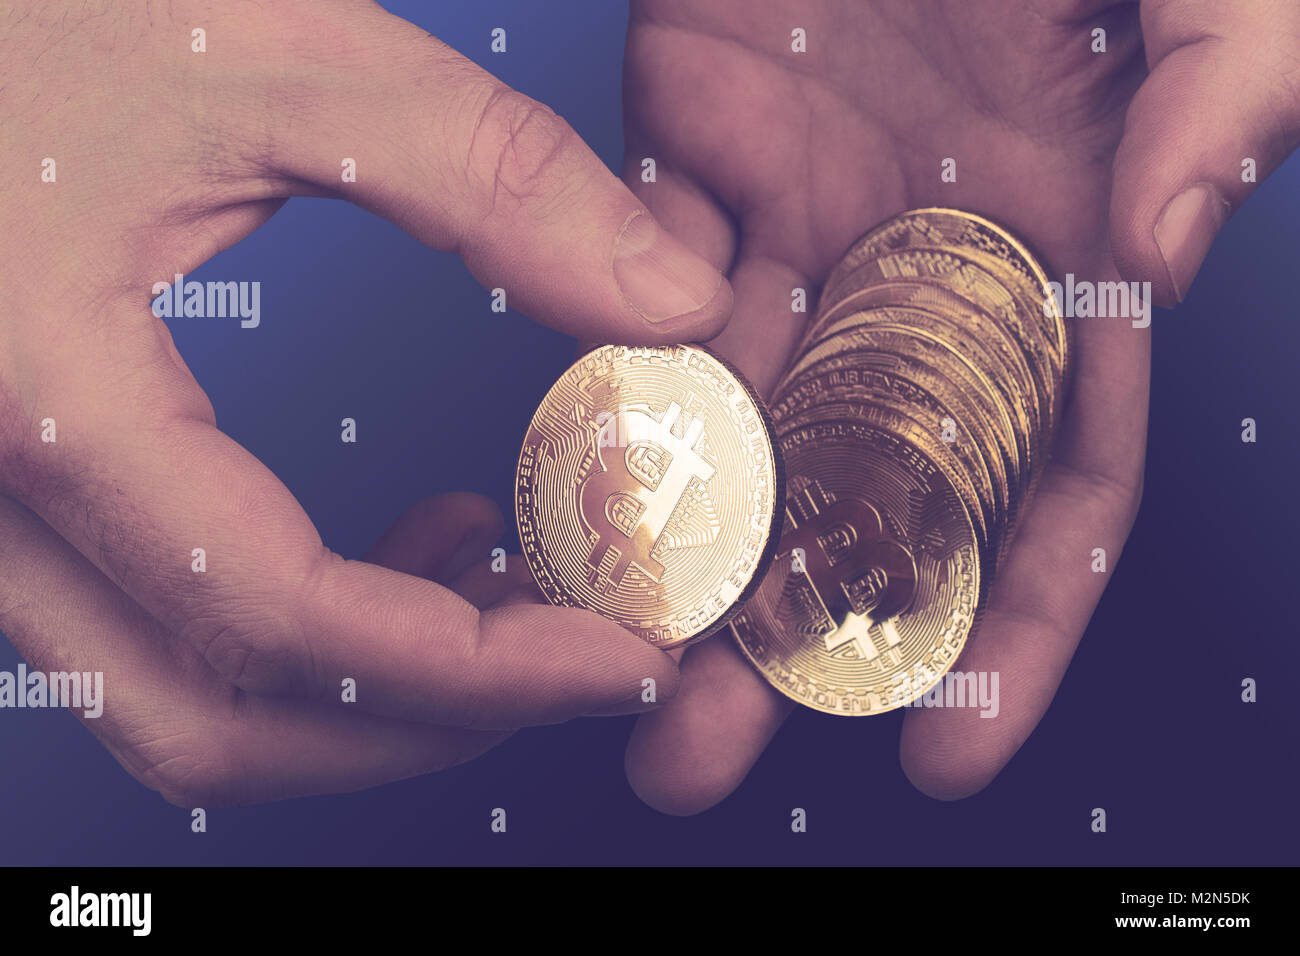 Concept cryptocurrency avec gros plan du Caucasian hands compter une pile de pièces d'or bitcoin Banque D'Images